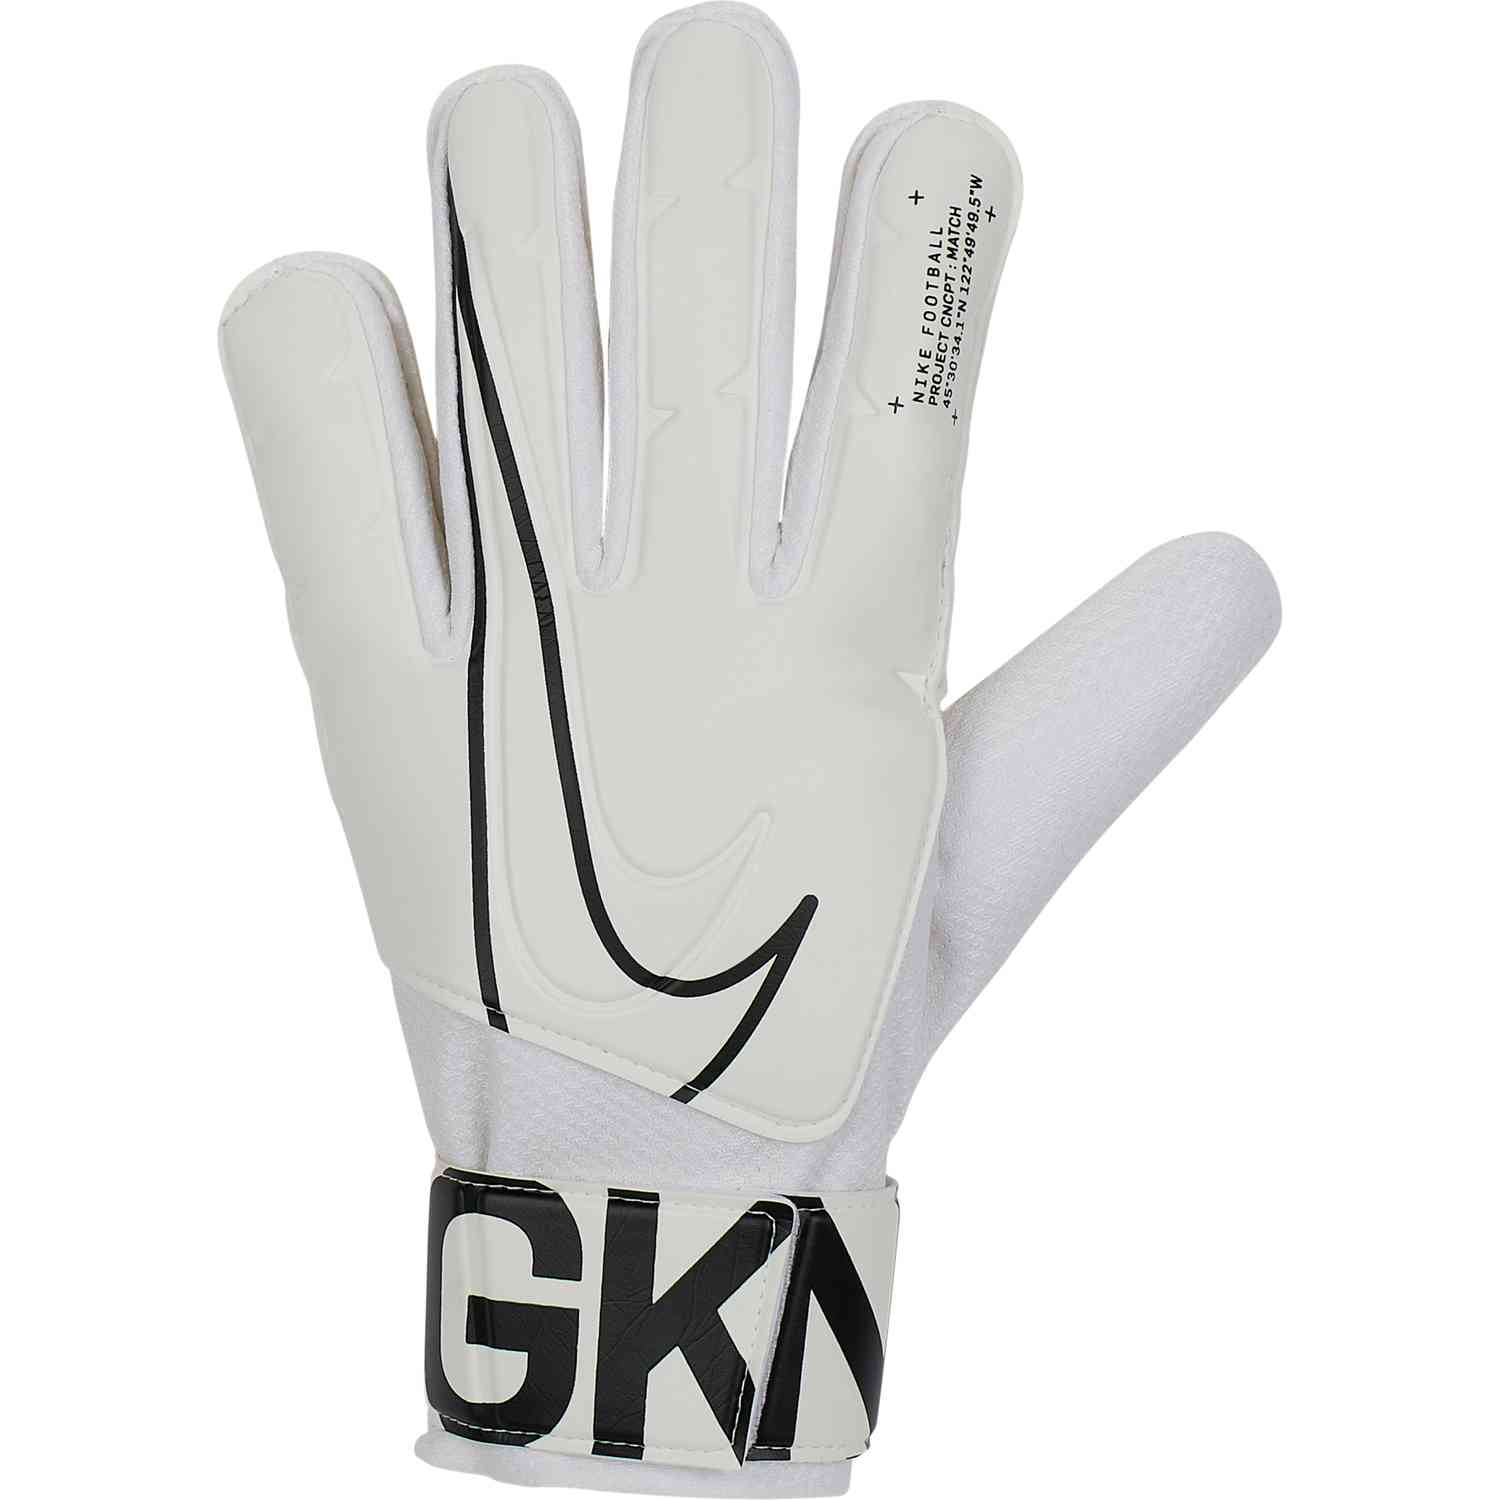 nike goalkeeper gloves white